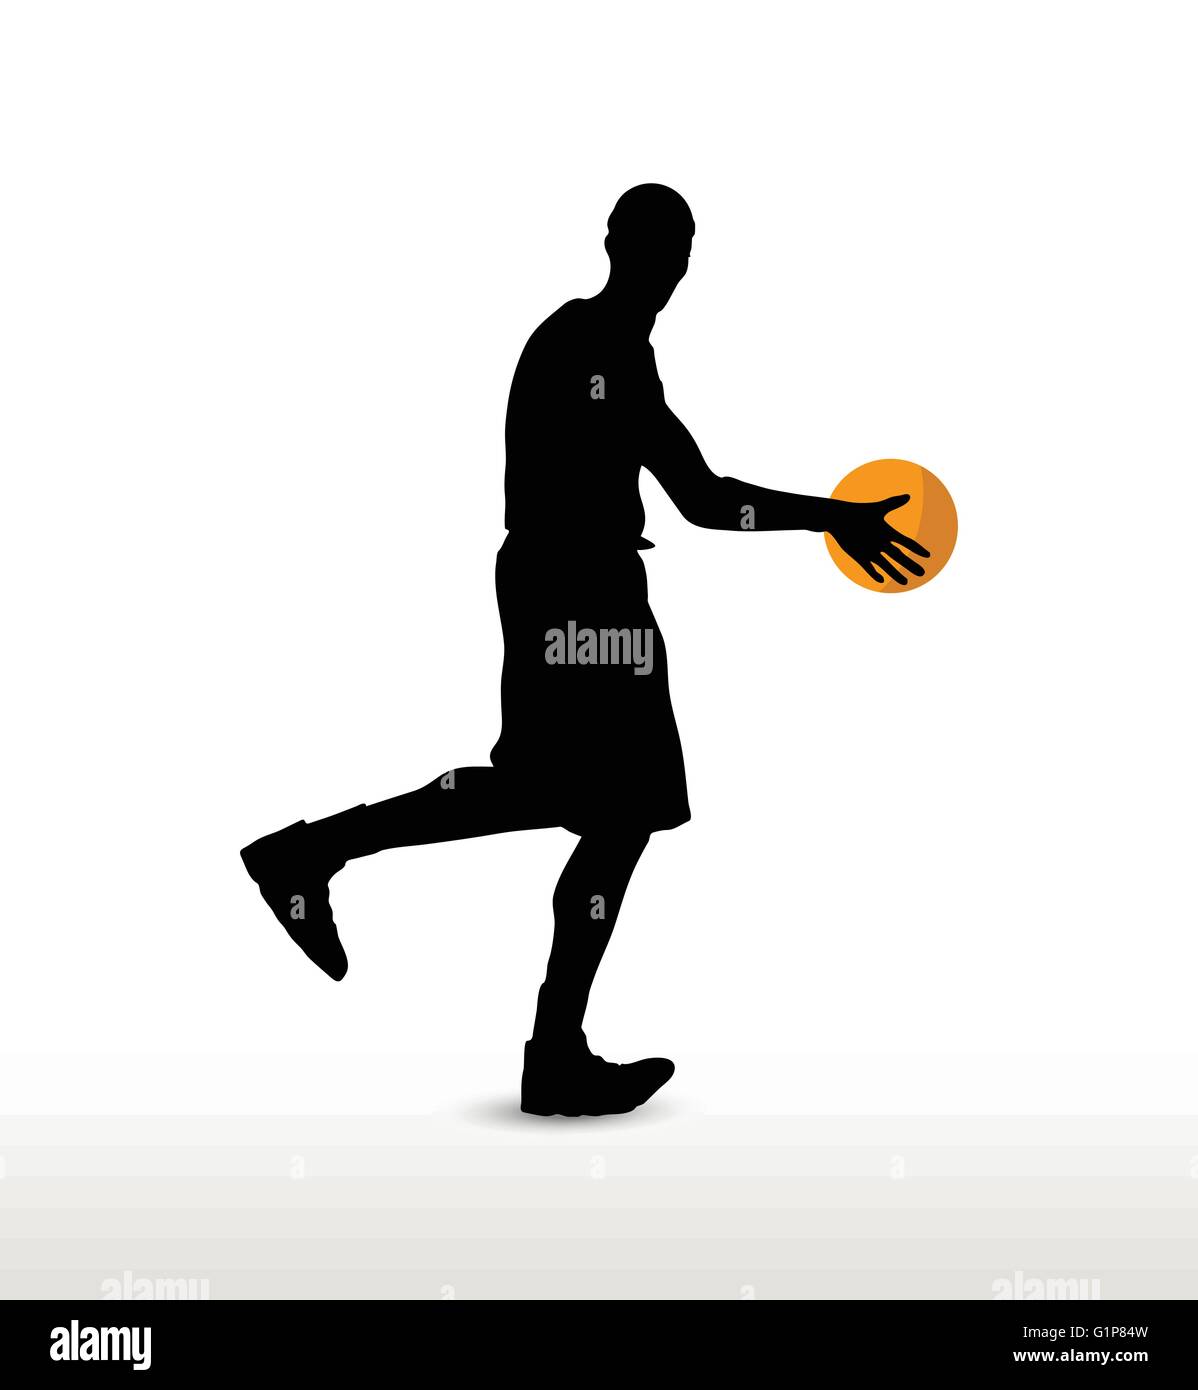 Image vectorielle - basketball player silhouette en drible pose, isolé sur  fond blanc Image Vectorielle Stock - Alamy